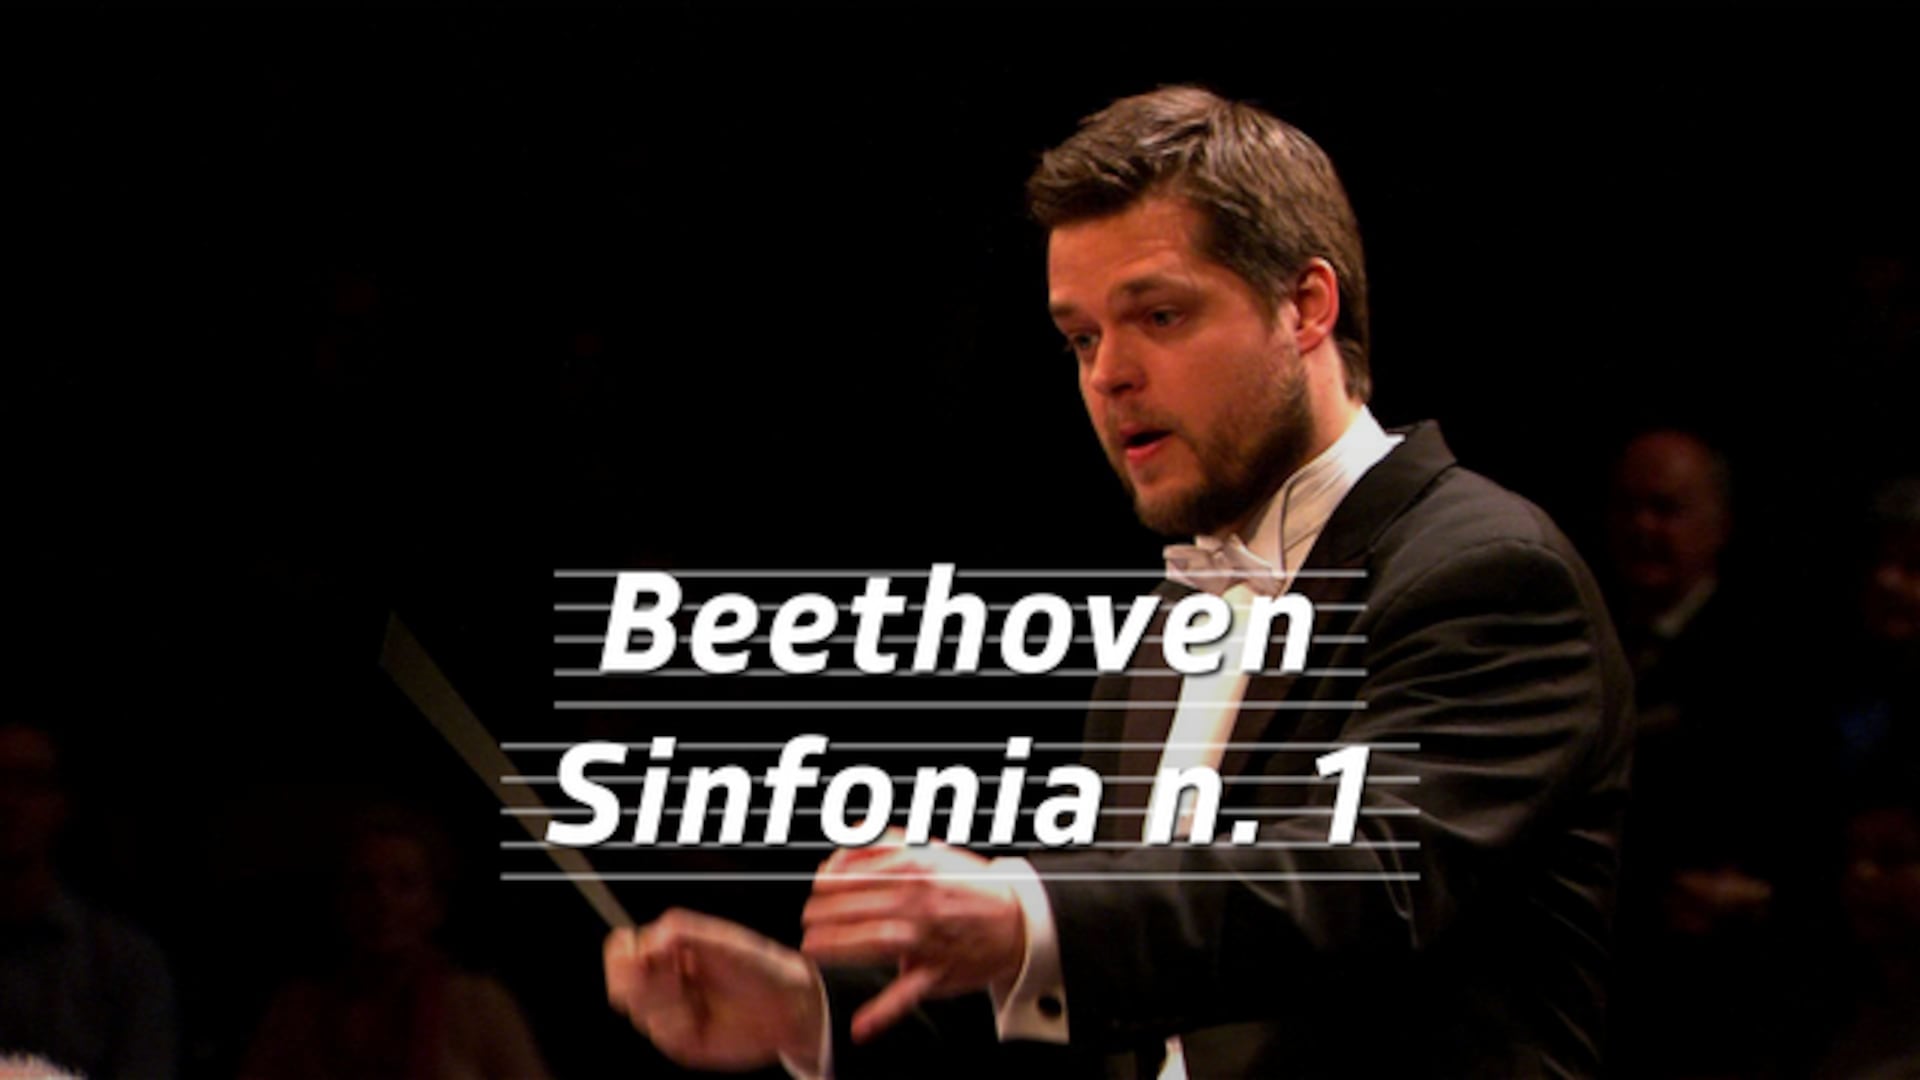 Beethoven - Sinfonia n. 1